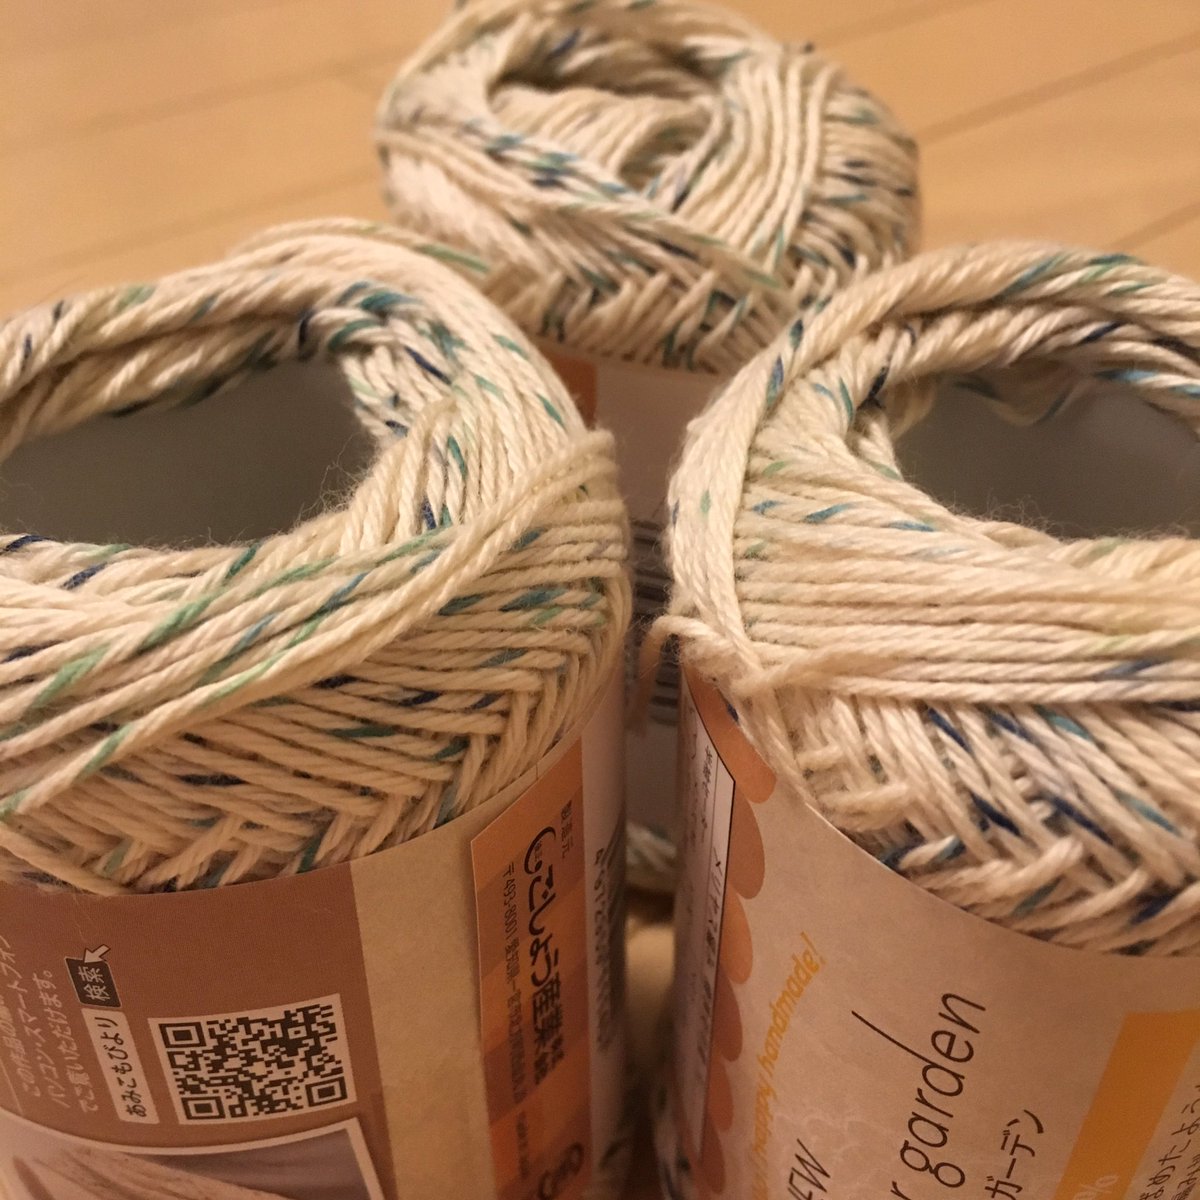 test ツイッターメディア - セリアで涼しげな色のコットン糸を買ってきた
何作ろう…
また在庫が増えただけだったりして(´ｰ｀)
#セリア
#毛糸
#編み物 https://t.co/tq0jerHeIb